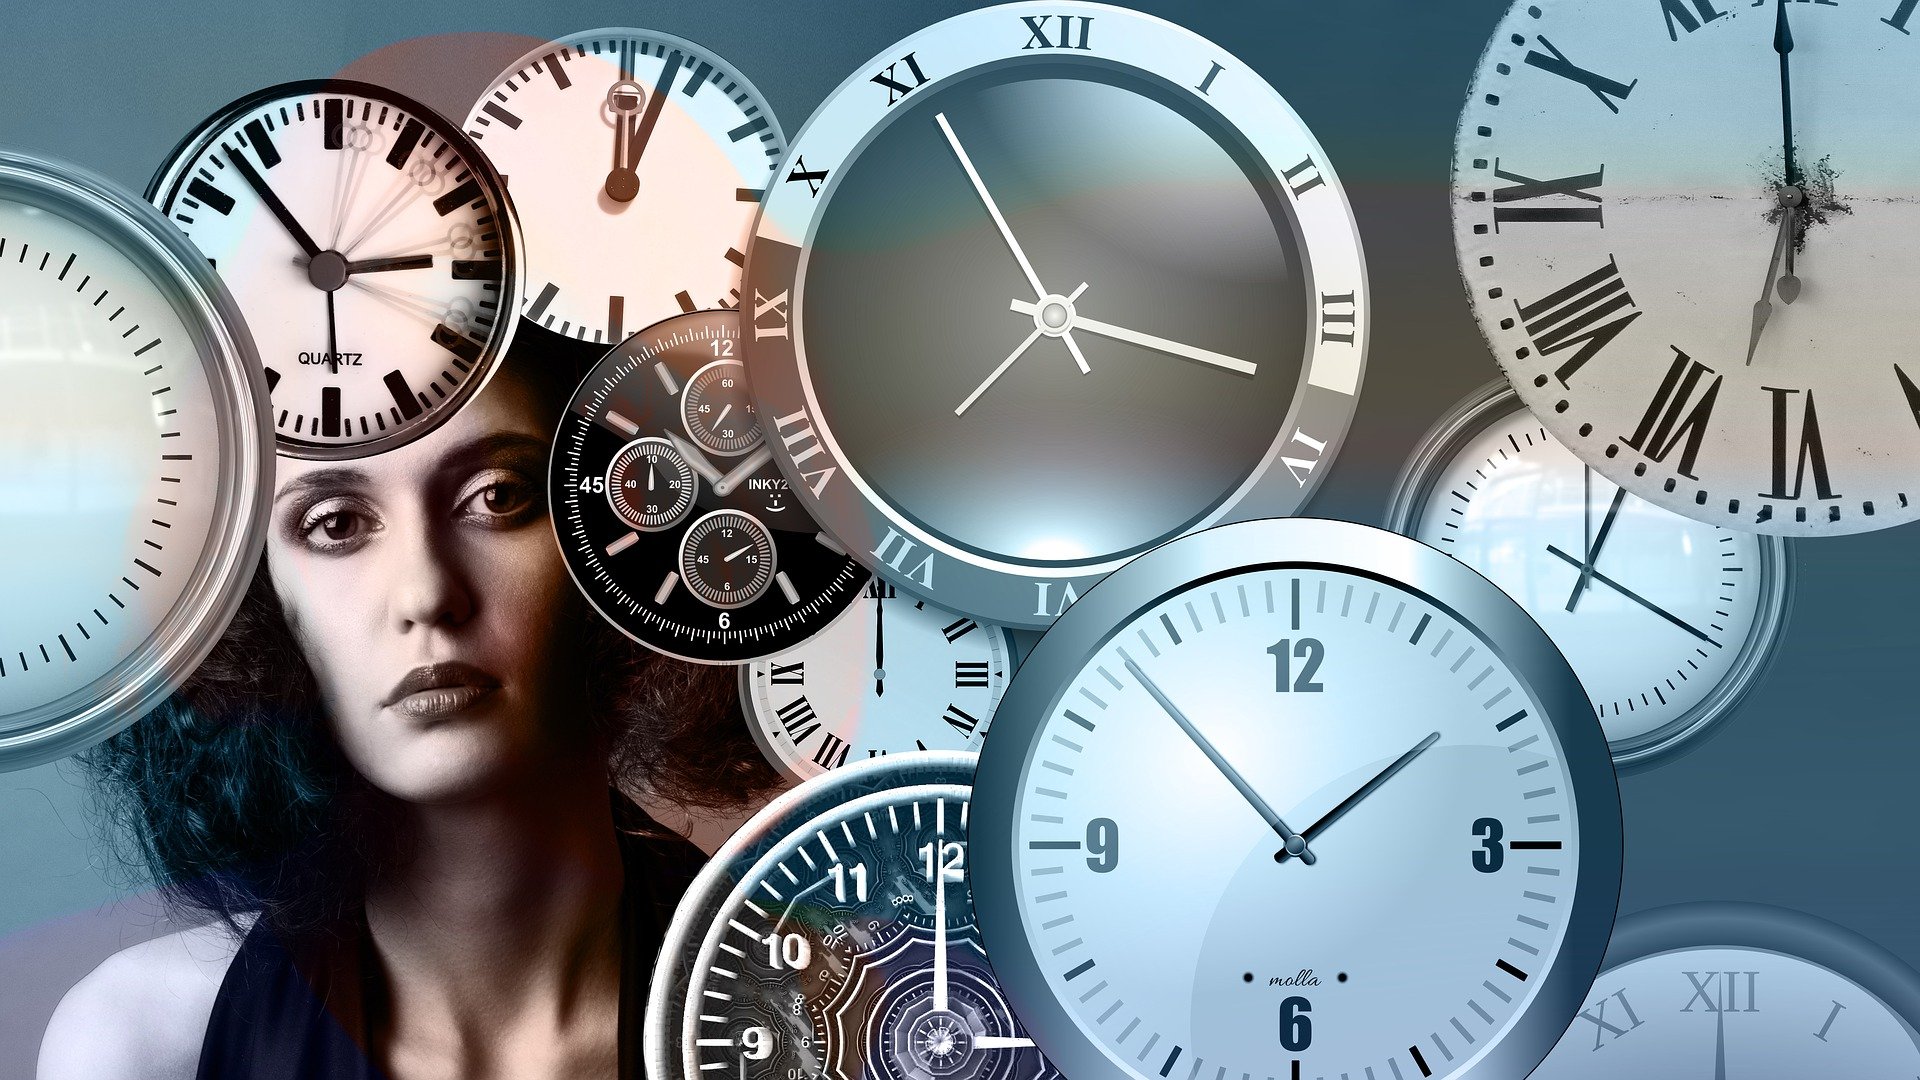 Das Bild zeigt eine Frau und viele Uhren, die verschiedene Zeiten anzeigen.